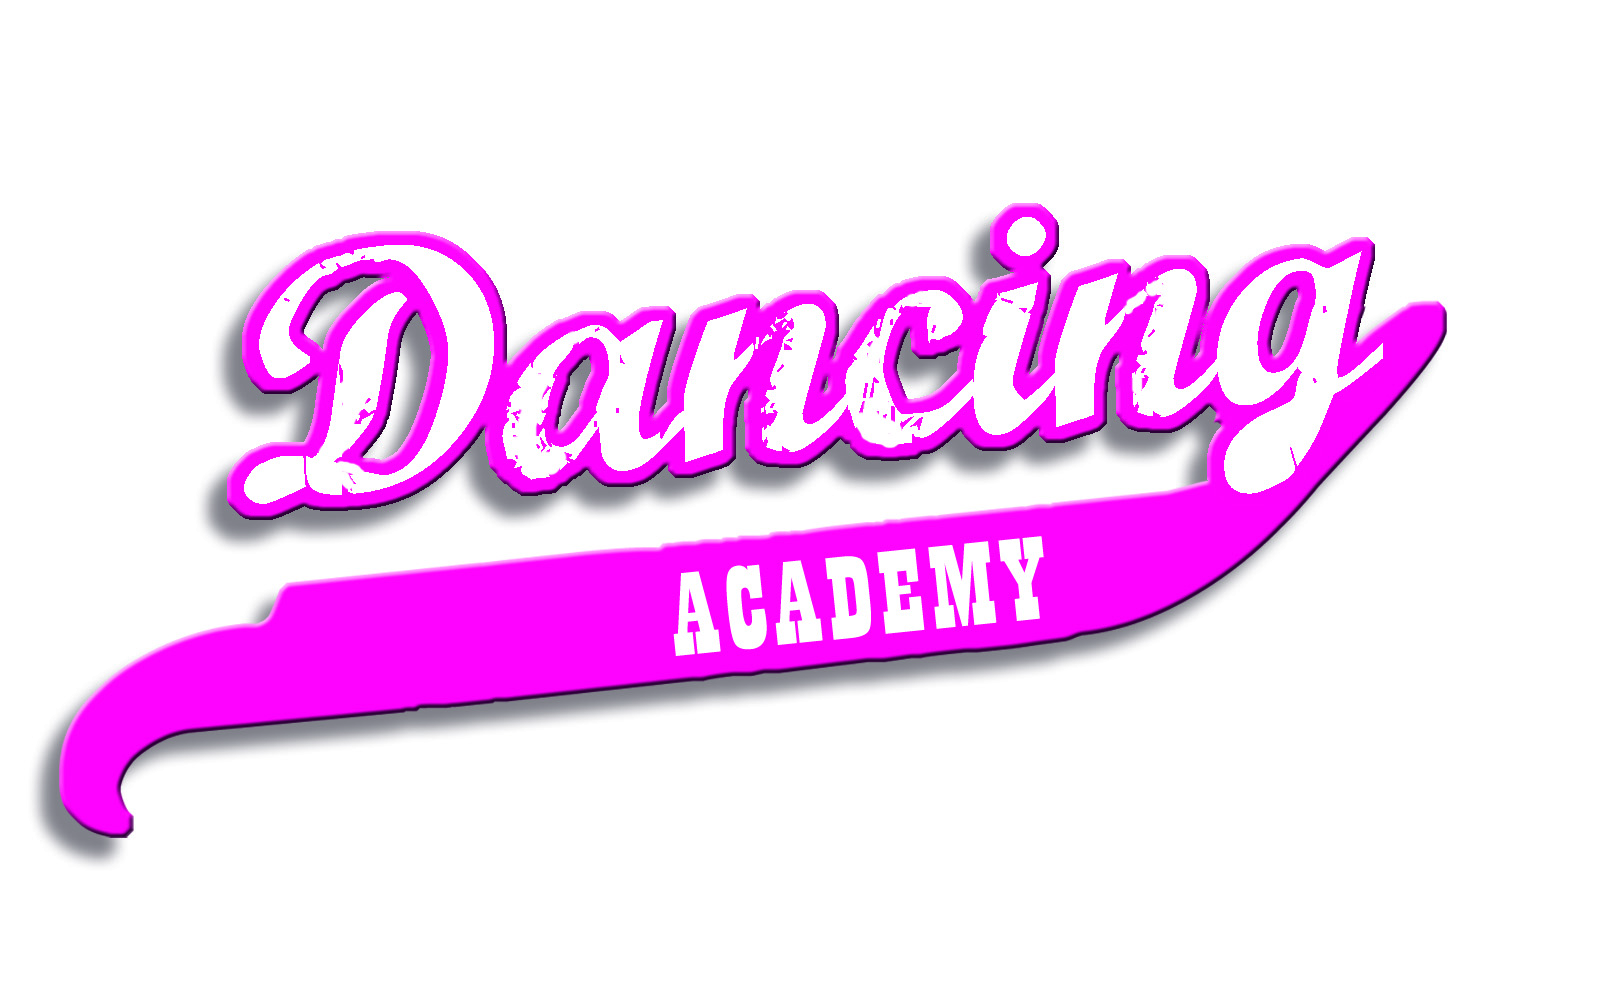 Image of Dancing Academy